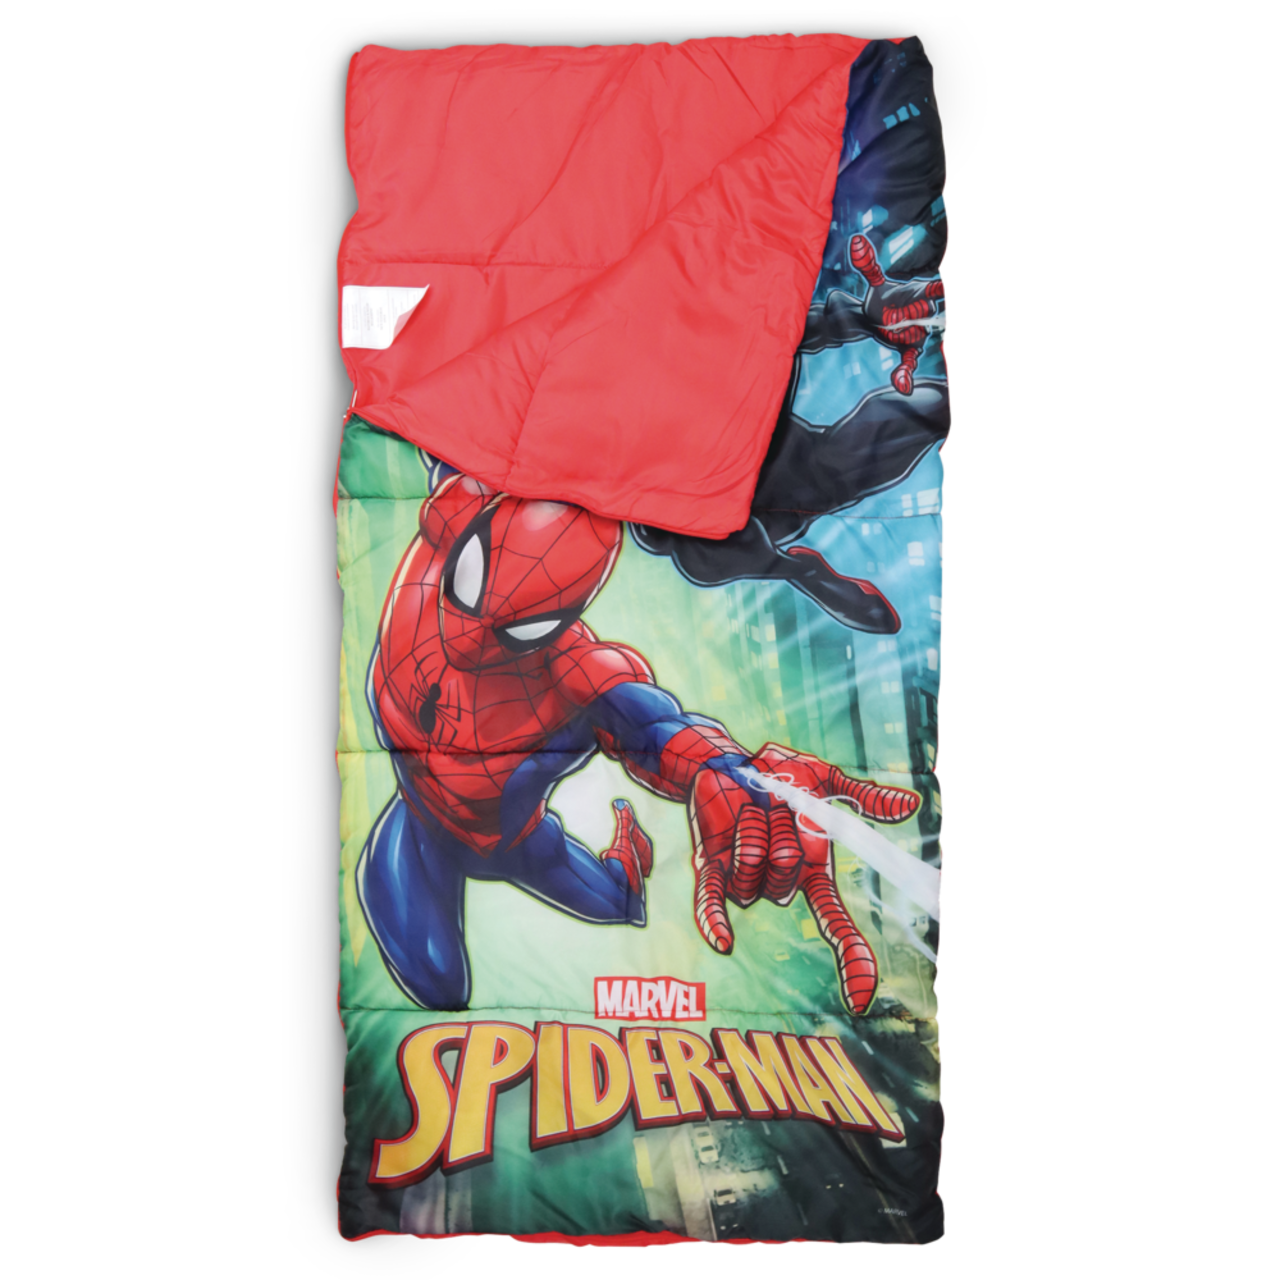 Pochette Spider Man pour appareil photo enfant